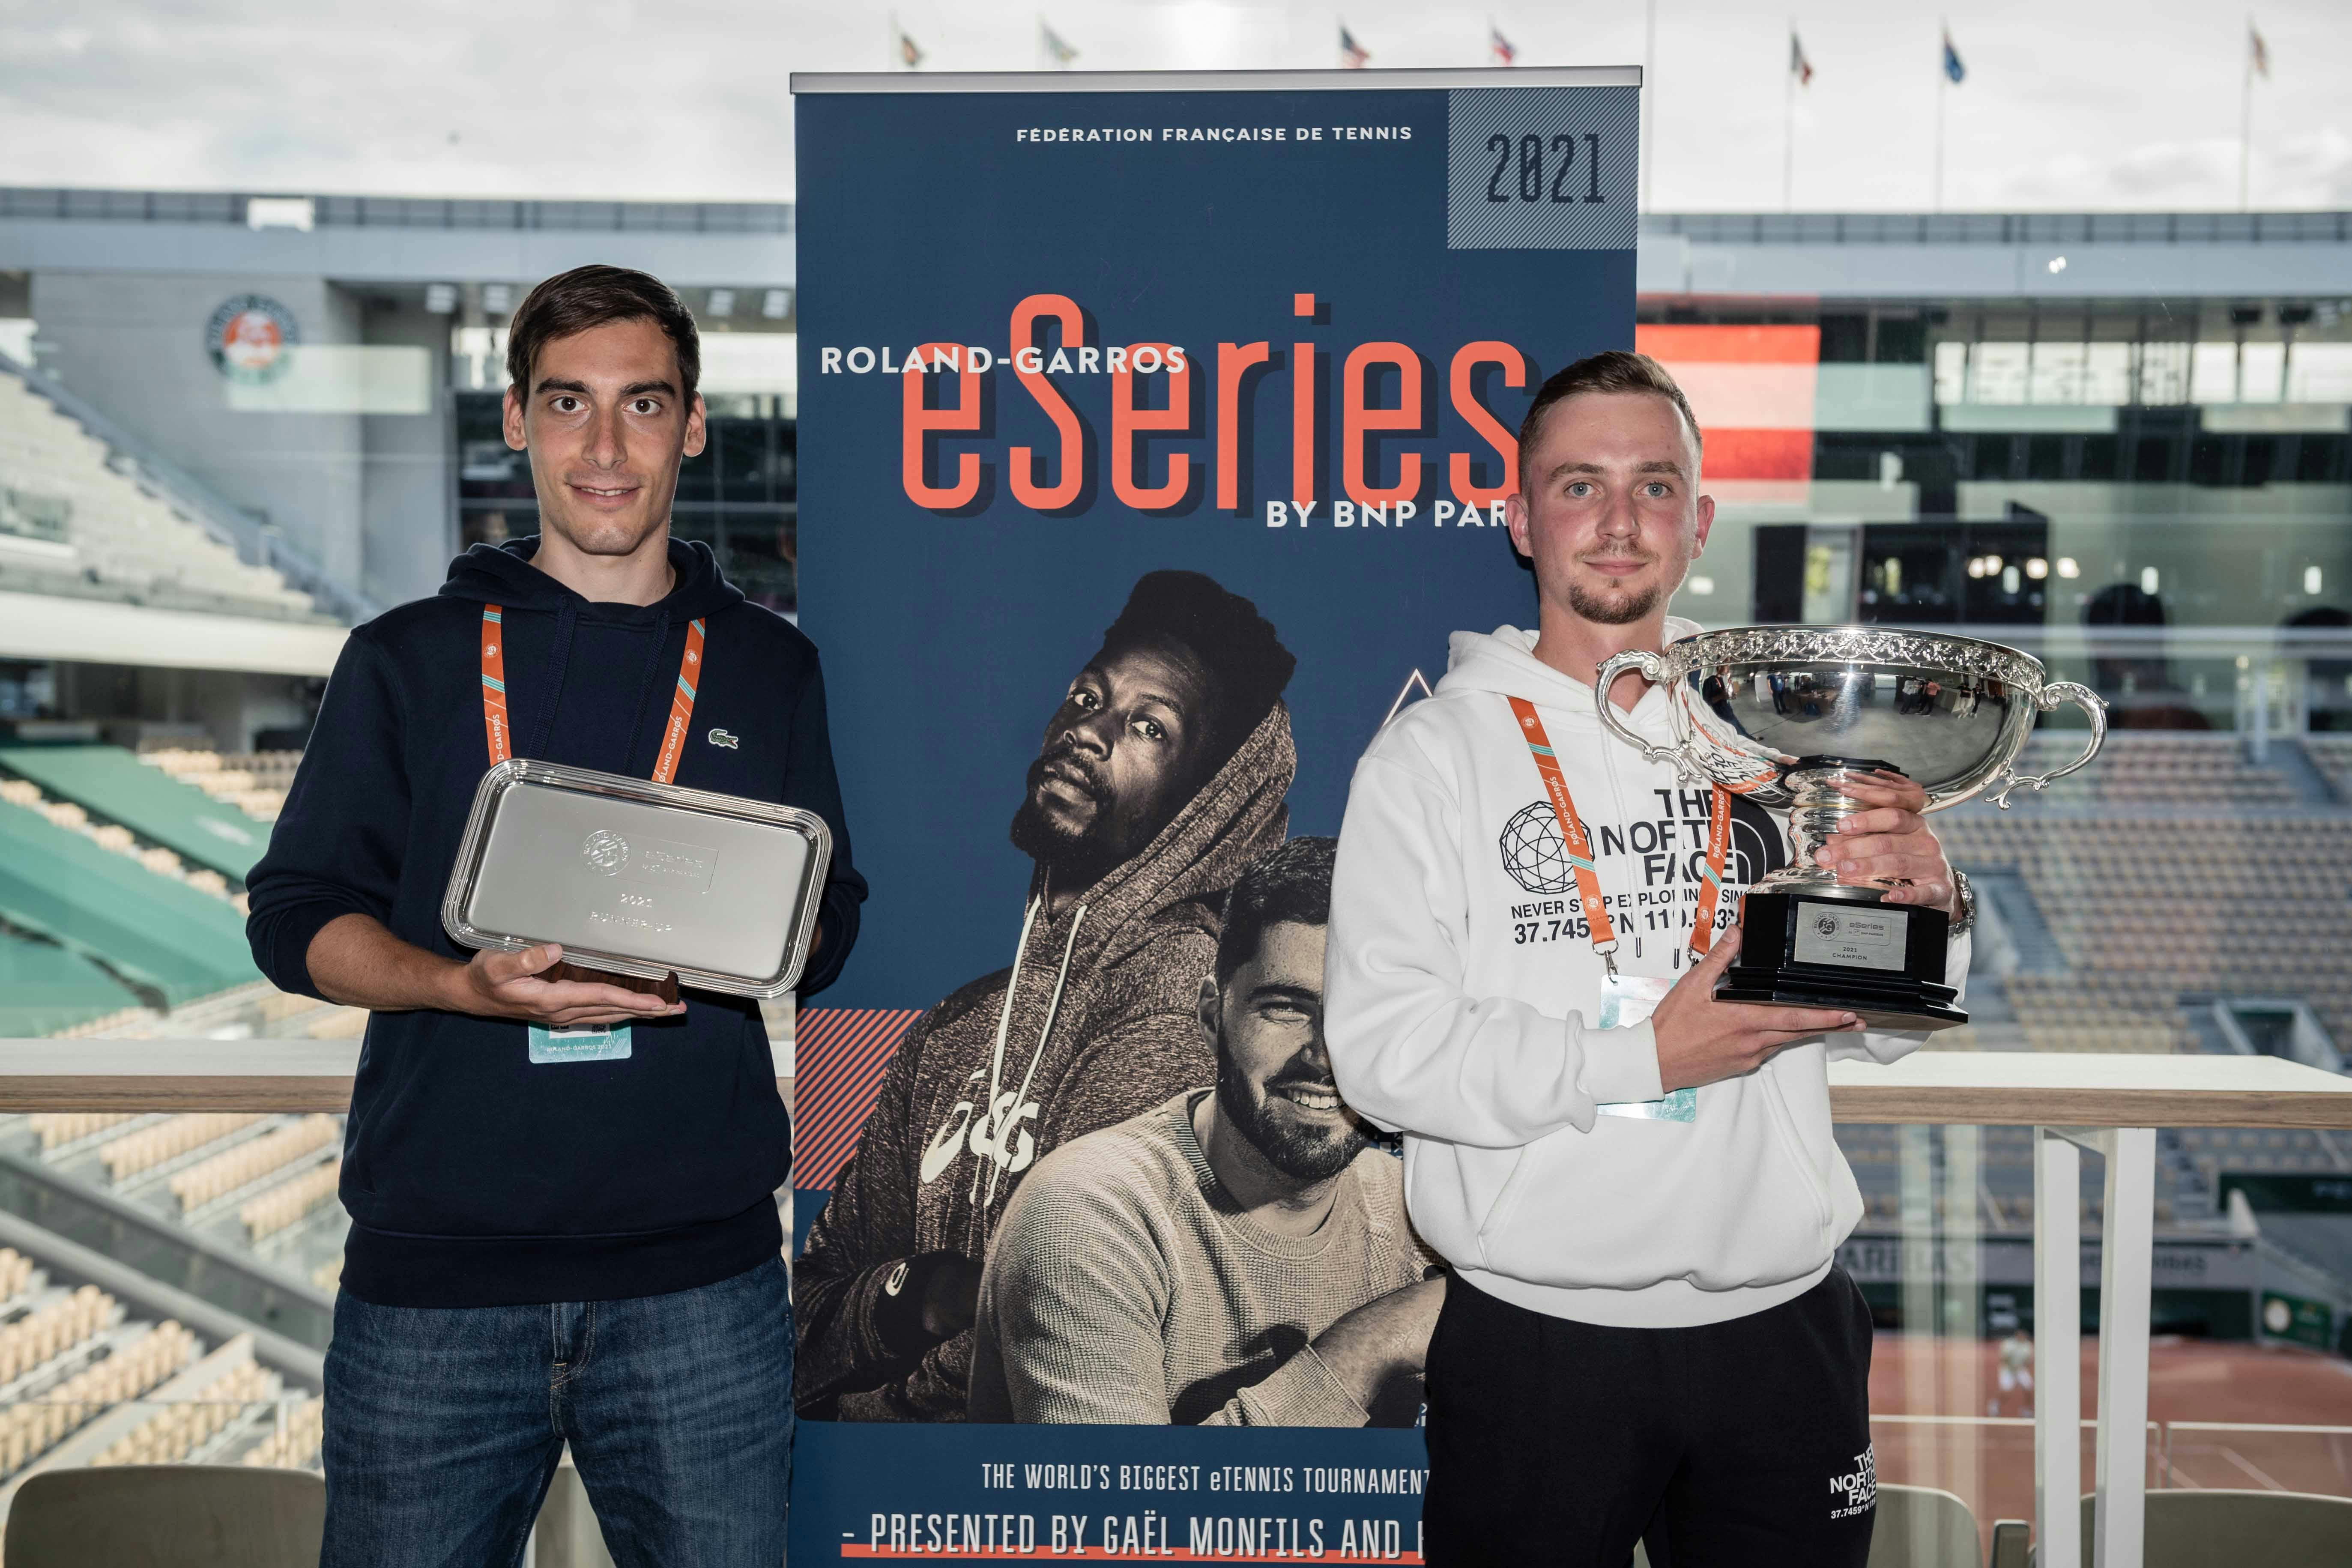 Vainqueur et finaliste des Roland-Garros eSeries by BNP Paribas 2021